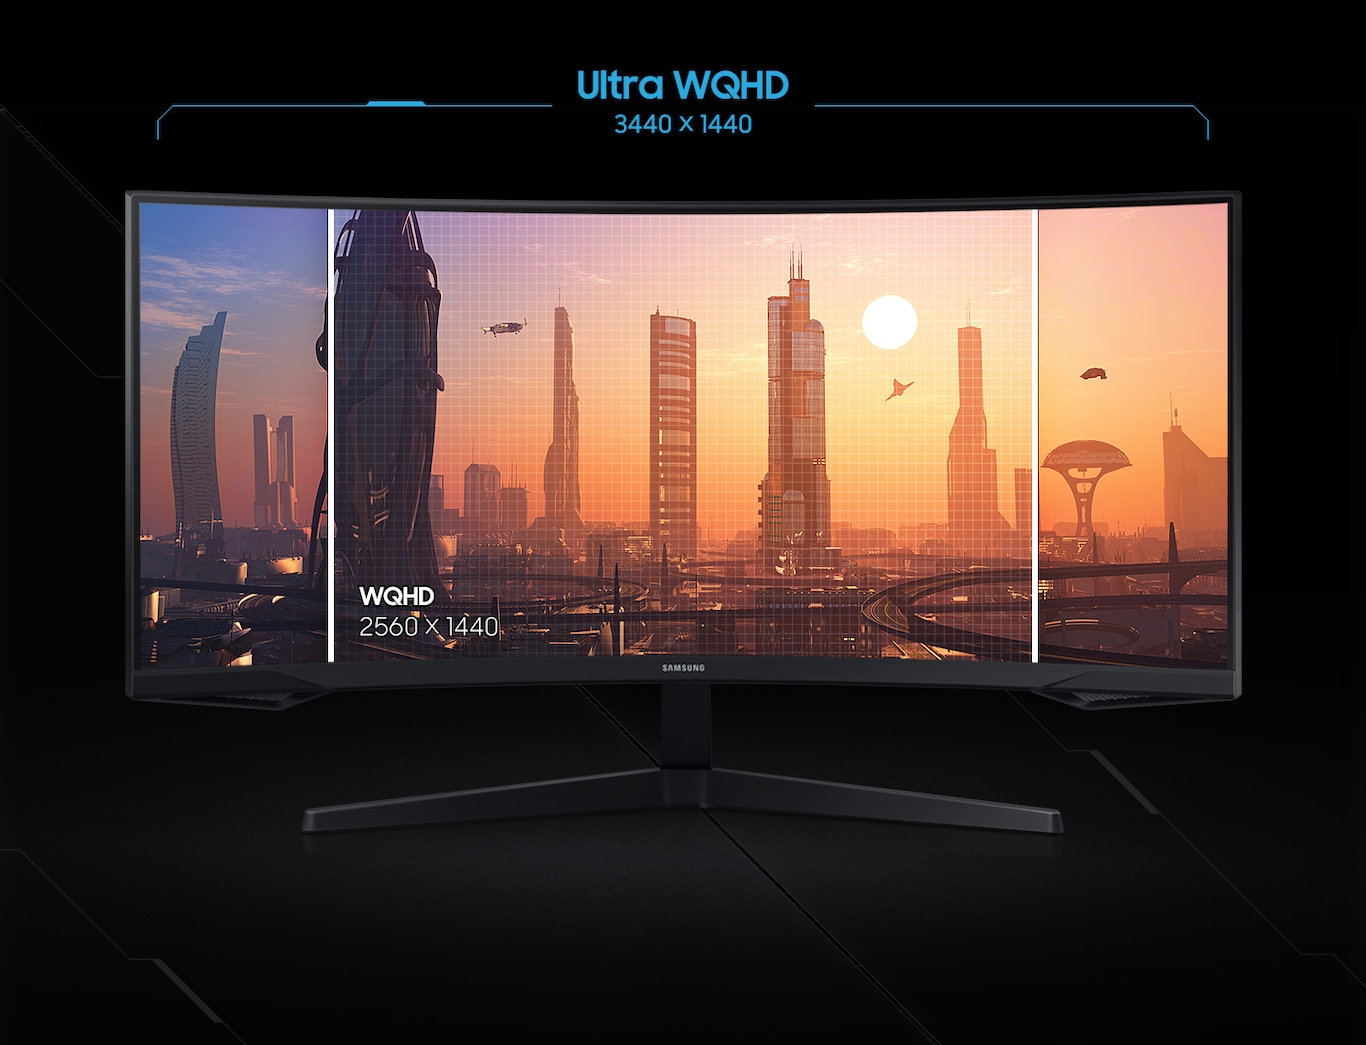 Hình ảnh trên màn hình WQHD (2560 x 1440) được mở rộng trên màn hình Ultra WQHD (3440 x 1440), điều này có nghĩa là bạn có thể nhìn thấy nhiều thứ hơn trên Ultra WQHD.